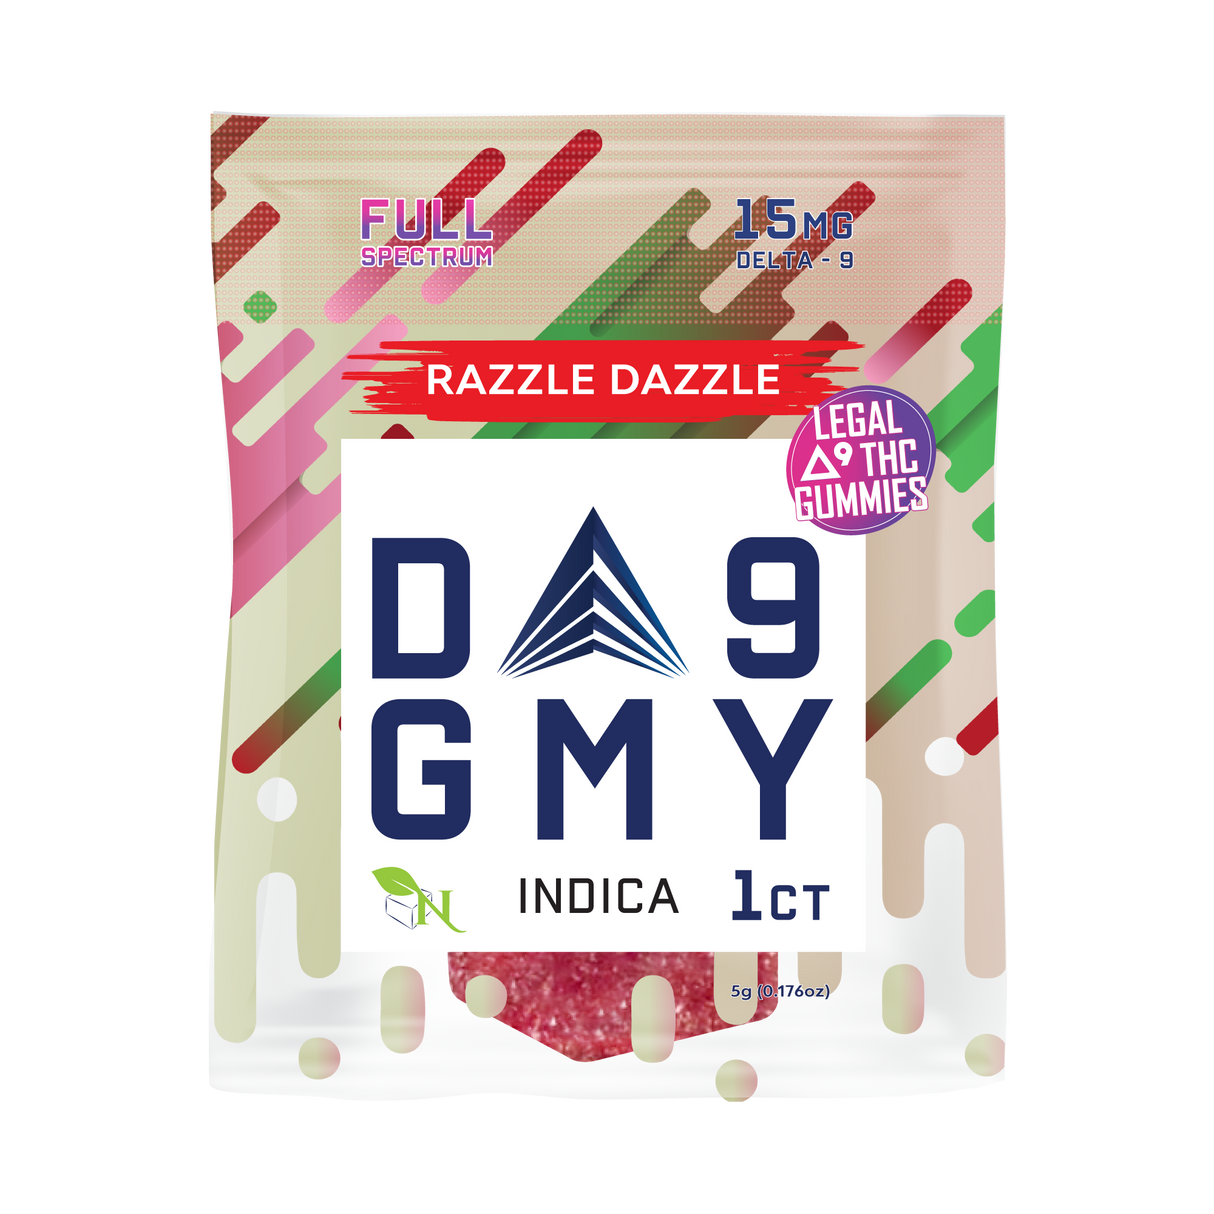 A Gift From Nature Delta-9 Single Indica Gummy 50CT Box: Razzle Dazzle